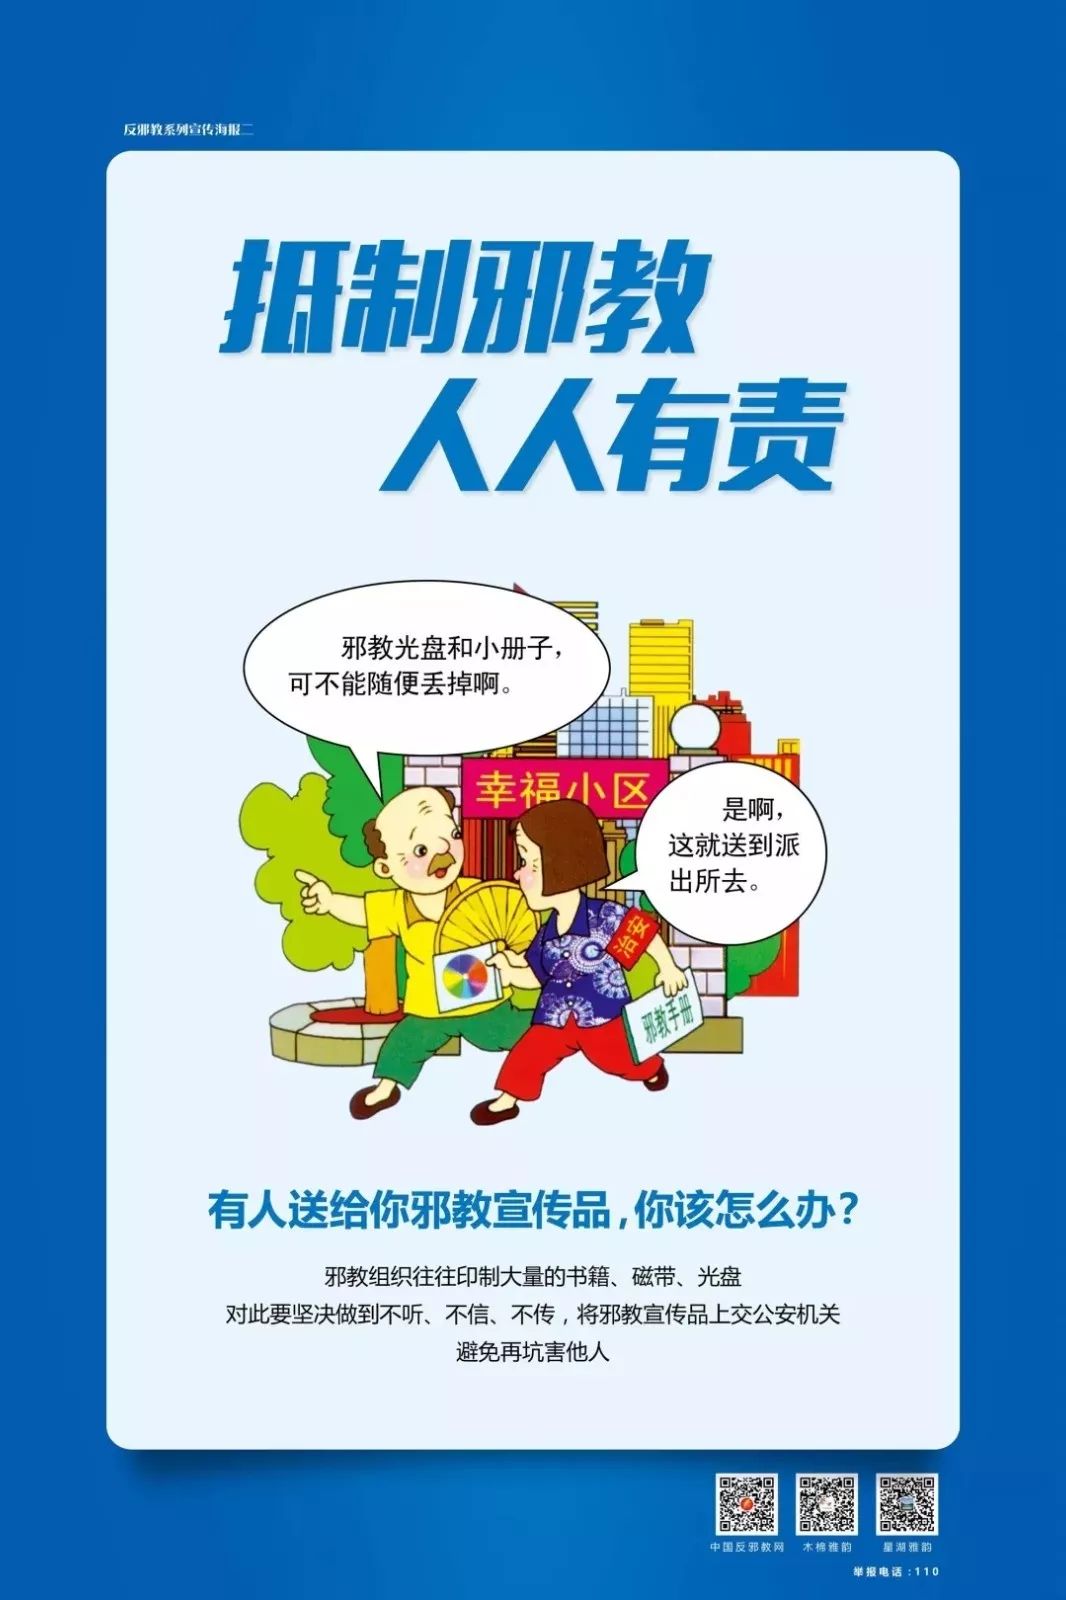 反邪教促和谐迎大庆宣传海报开始投票肇庆2幅作品入选